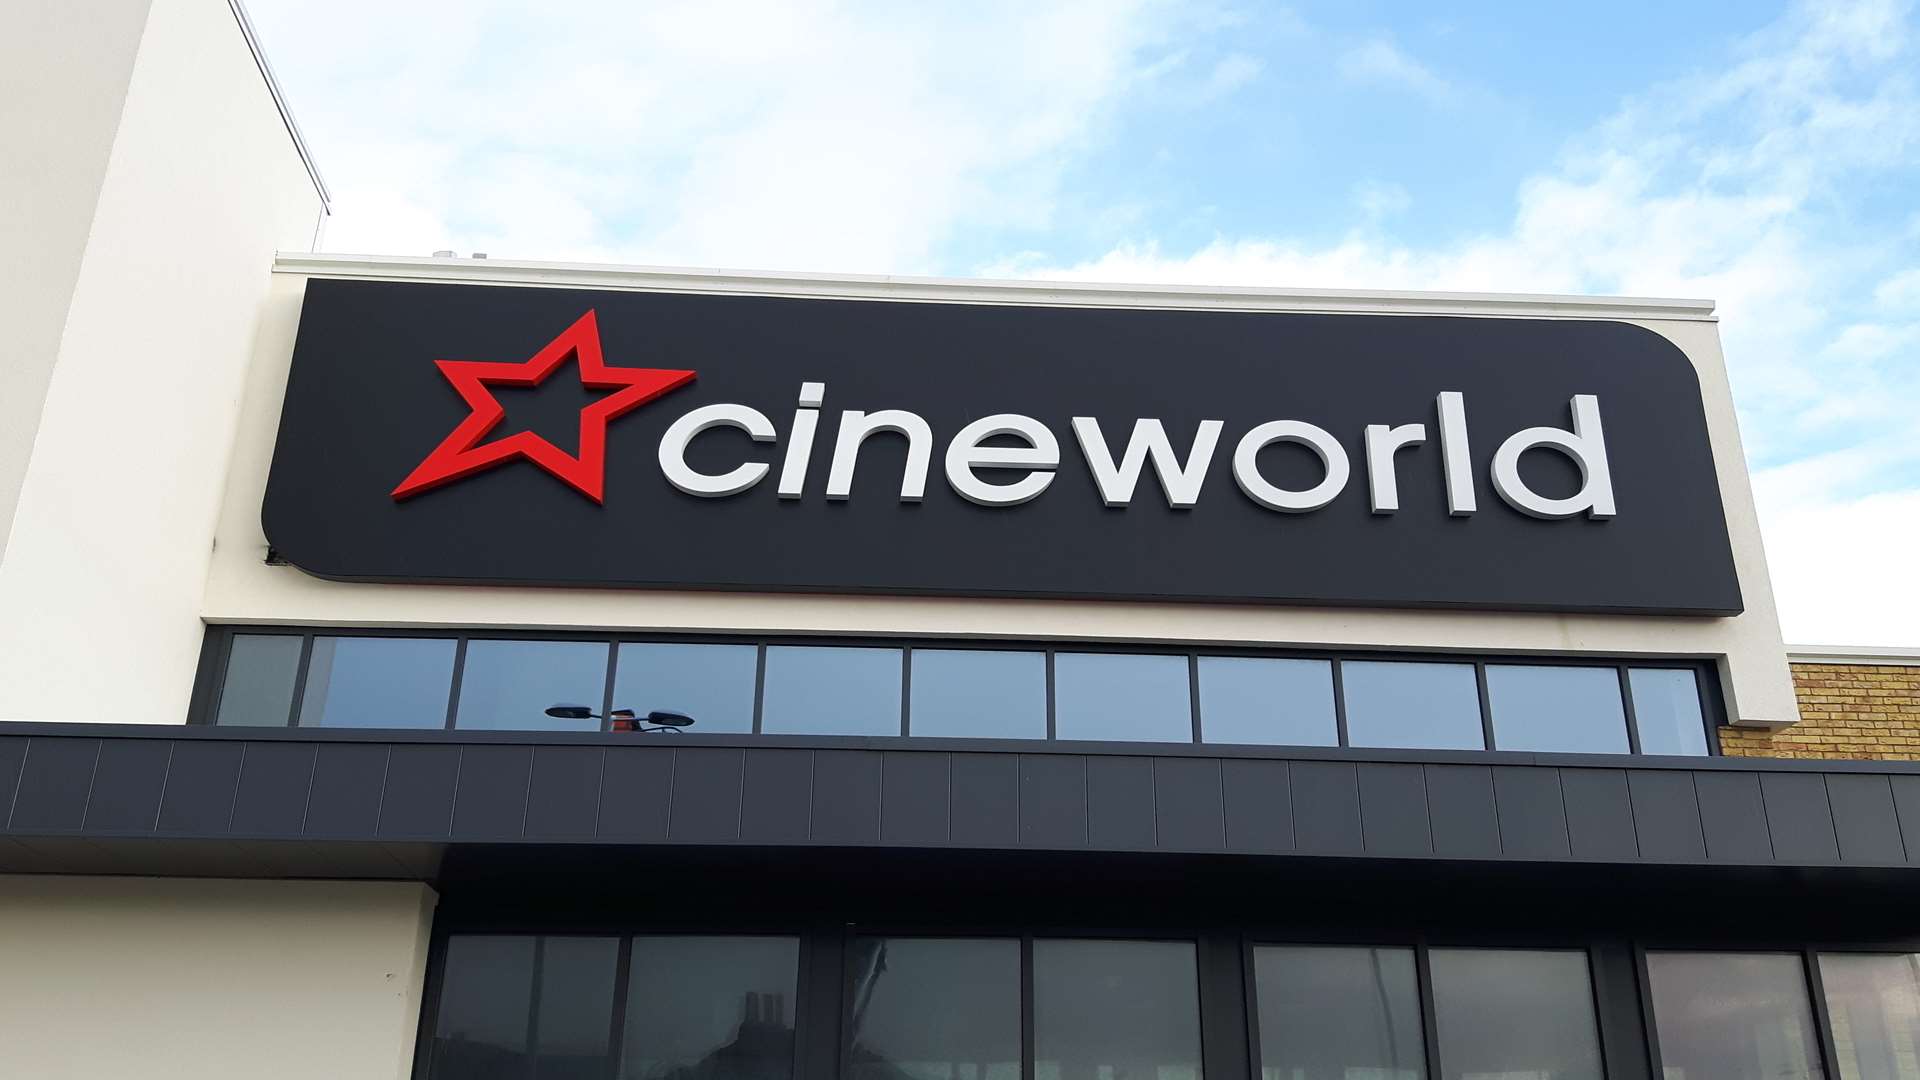 Dover's new Cineworld